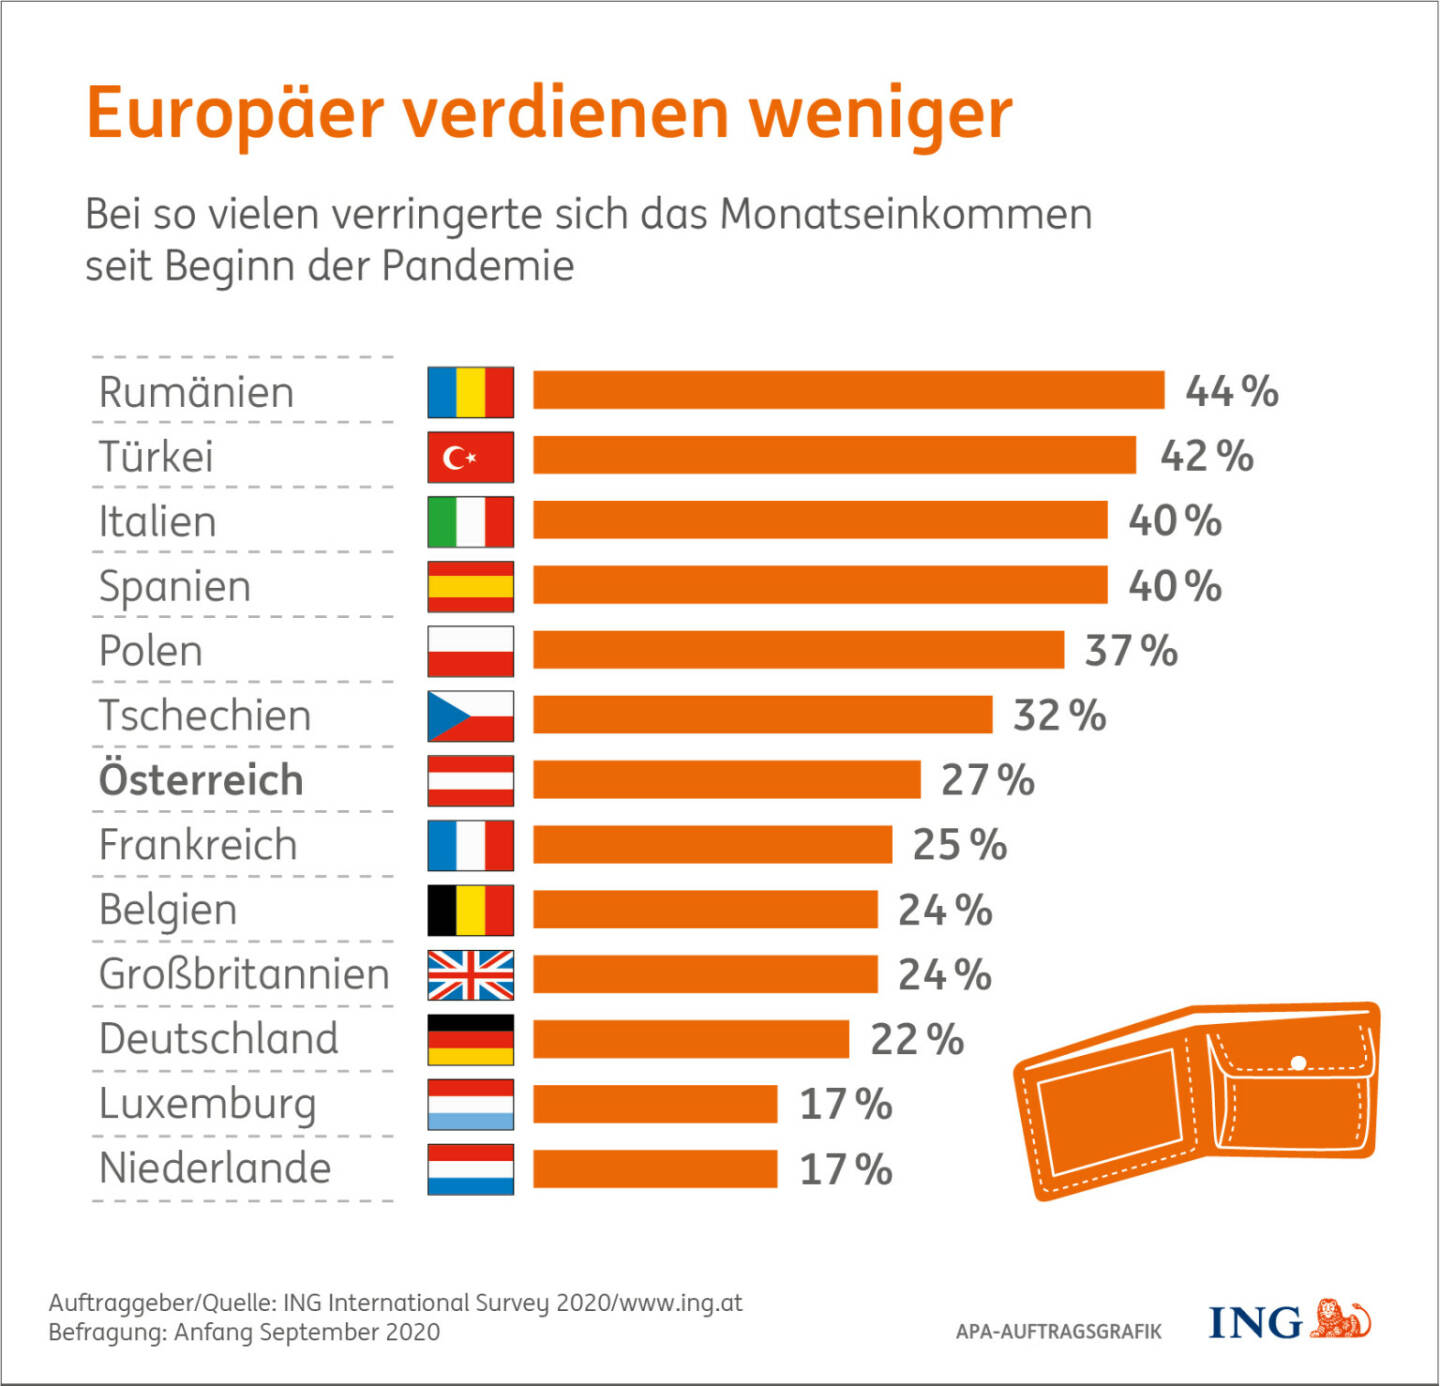 ING: Corona: Jeder Vierte verdiente weniger, Mehr als jeder vierte Österreicher (27%) gab bei der Umfrage der ING (www.ing.at) im September an, aufgrund der Pandemie weniger verdient zu haben. Damit liegen wir im Mittelfeld der von insgesamt 13 befragten europäischen Ländern. Credit: ING